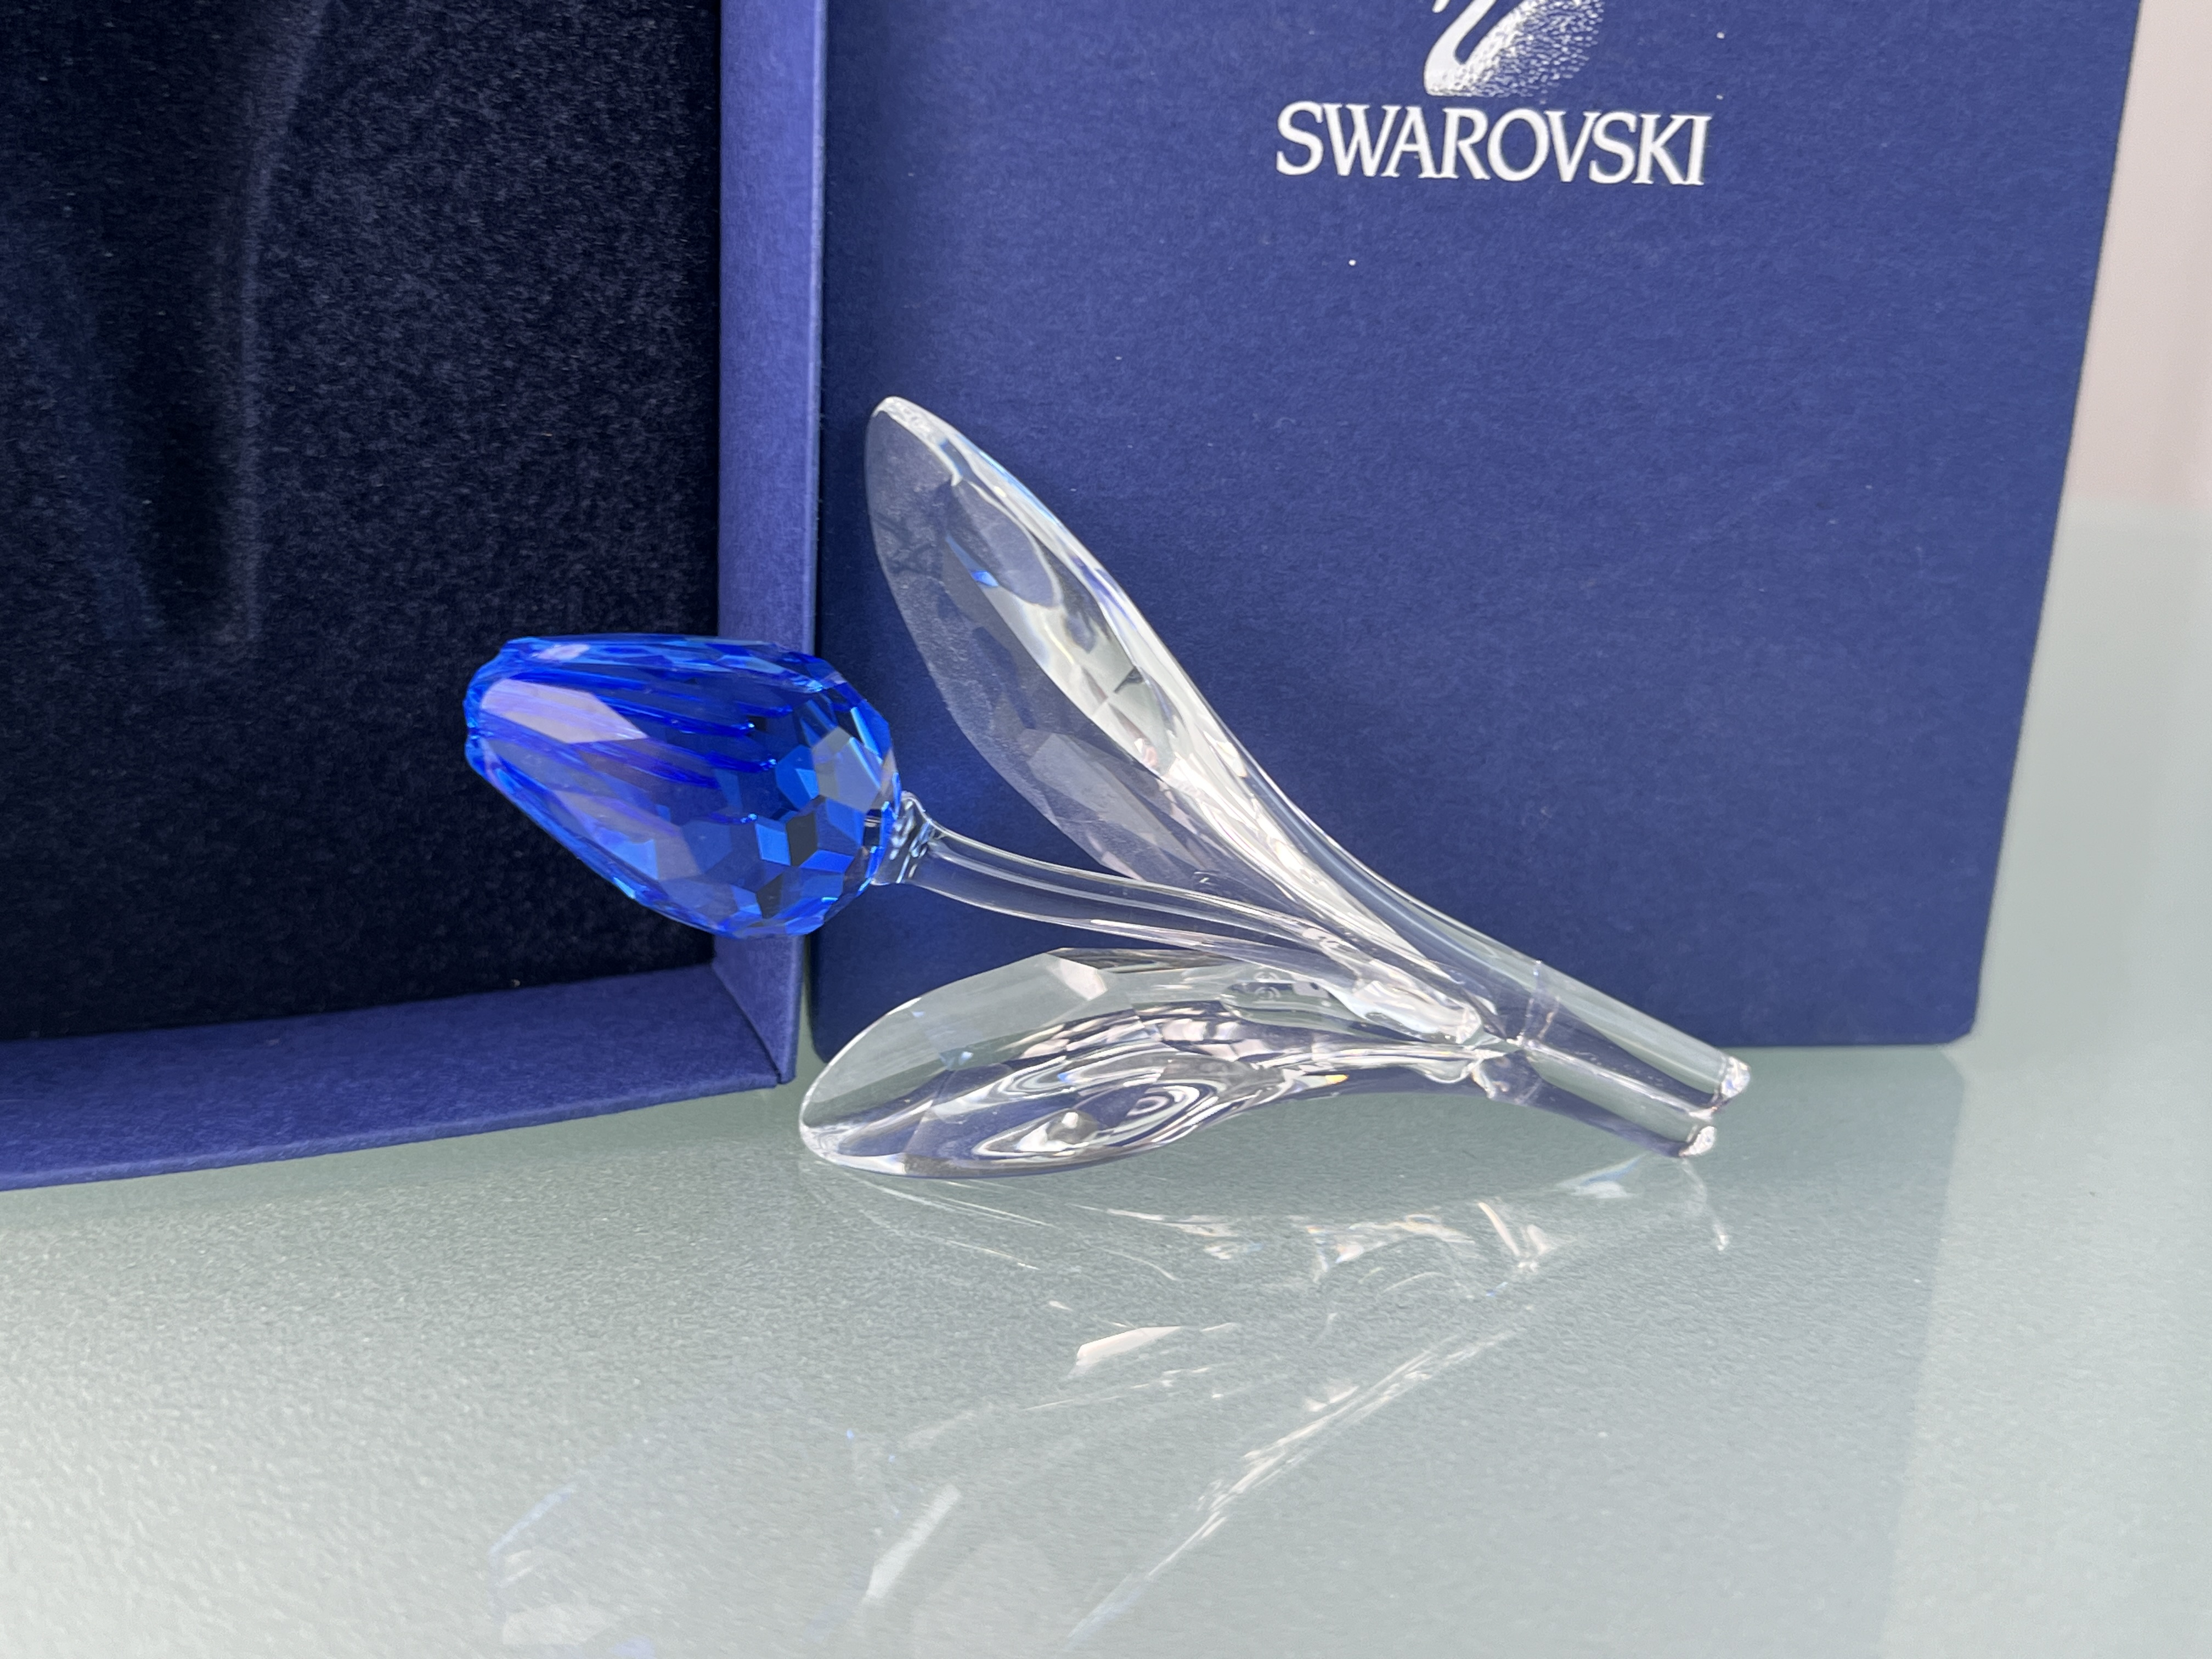  Swarovski Figur Große Tulpe Blau 9 cm. Mit Ovp - Top Zustand